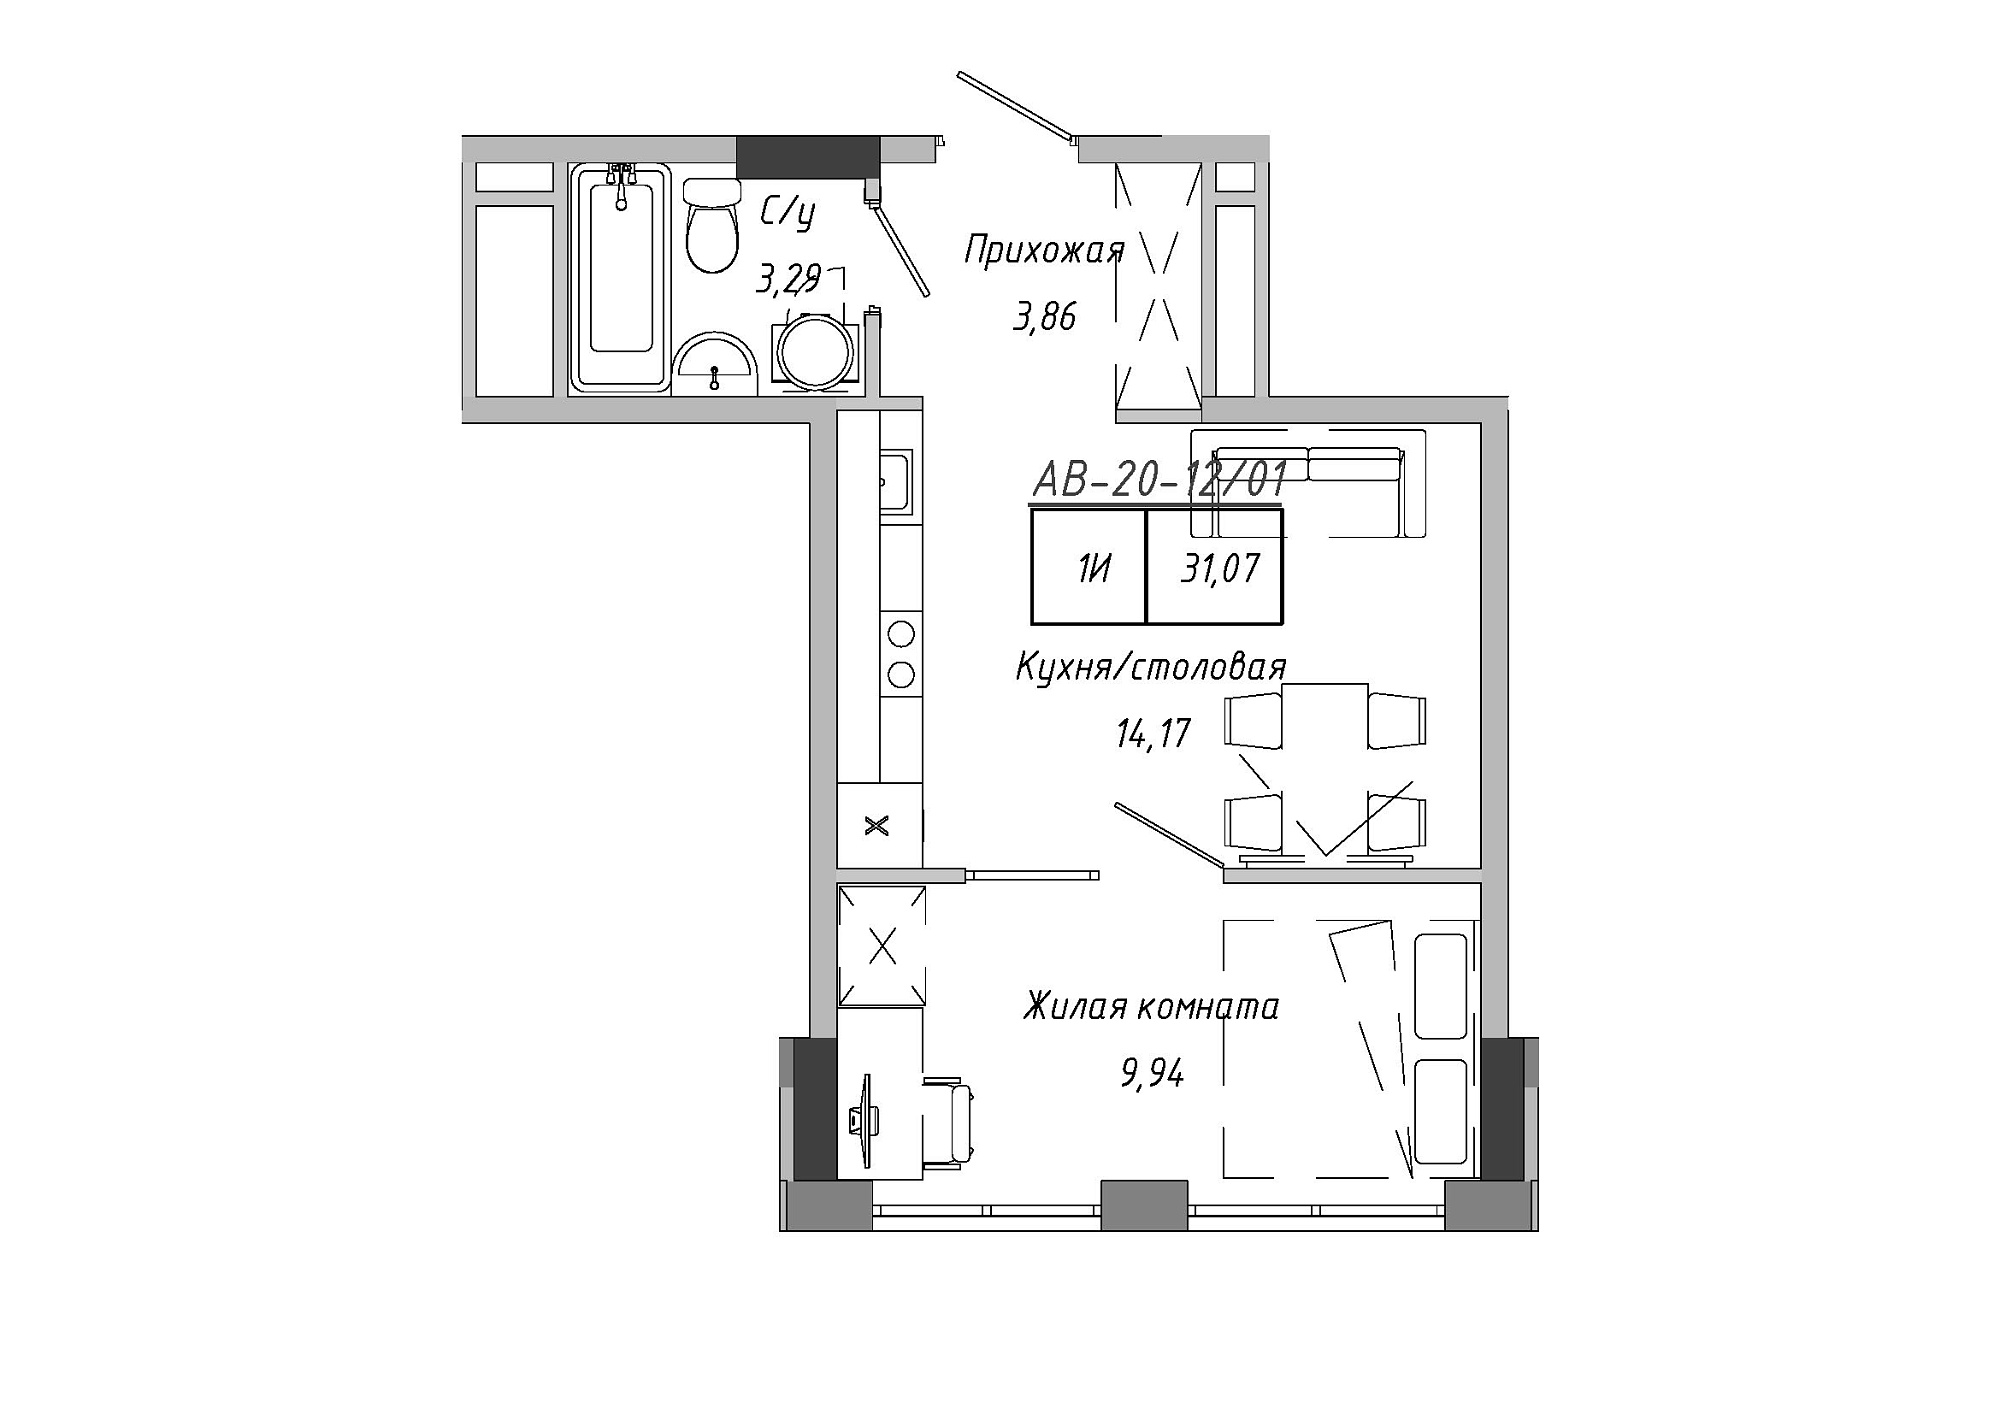 Планування 1-к квартира площею 30.28м2, AB-20-12/00001.